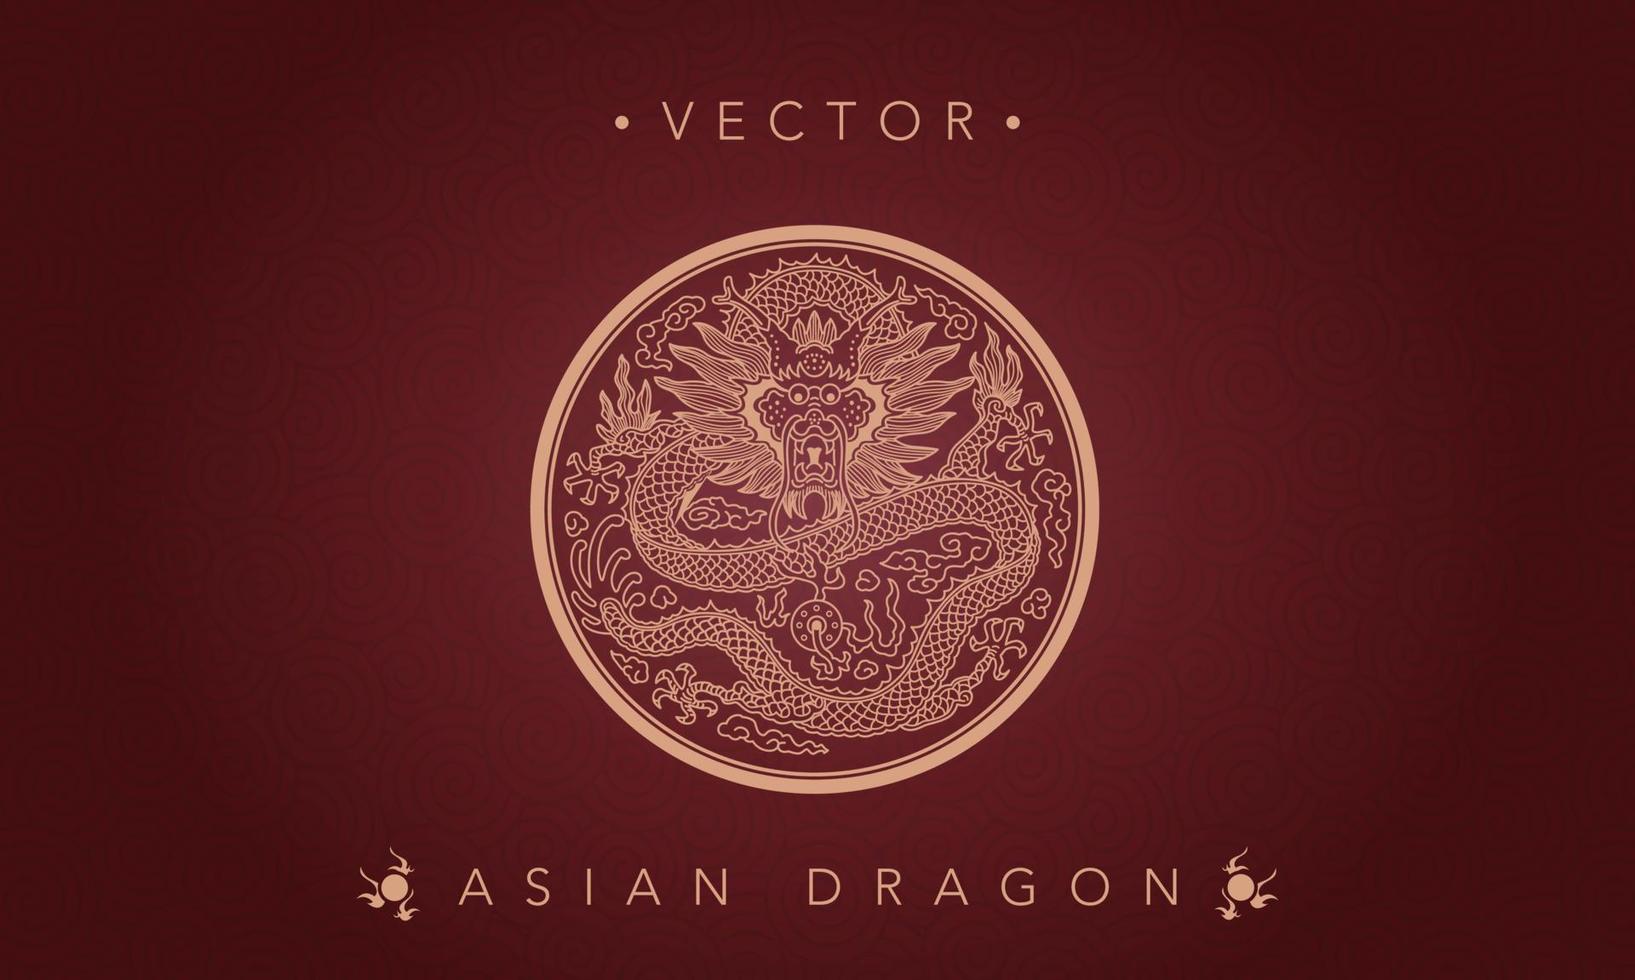 asiatischer Drache chinesisches Drachentotemmuster vektor